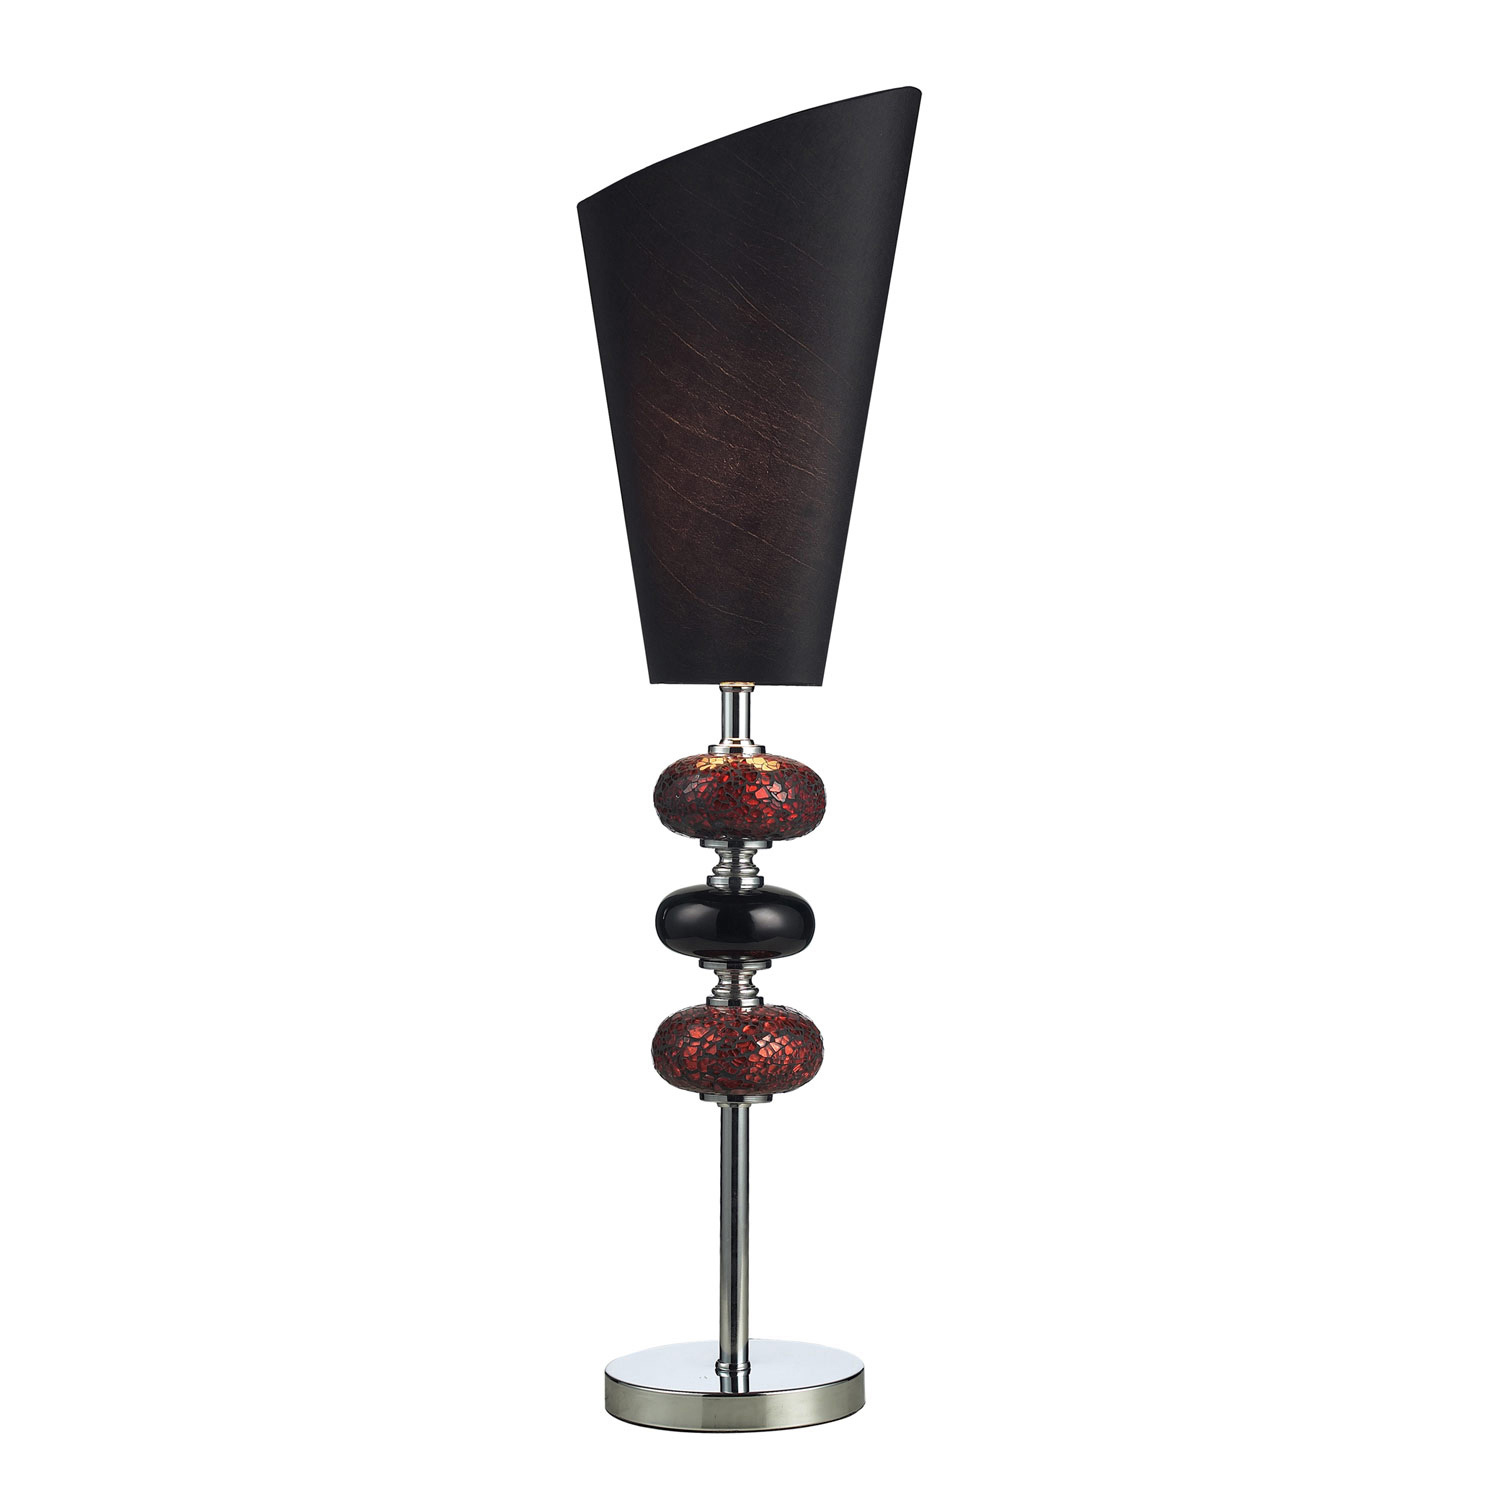 Elk Lighting 111-1081 Delta Table Lamp - Mossica Glass, Chrome